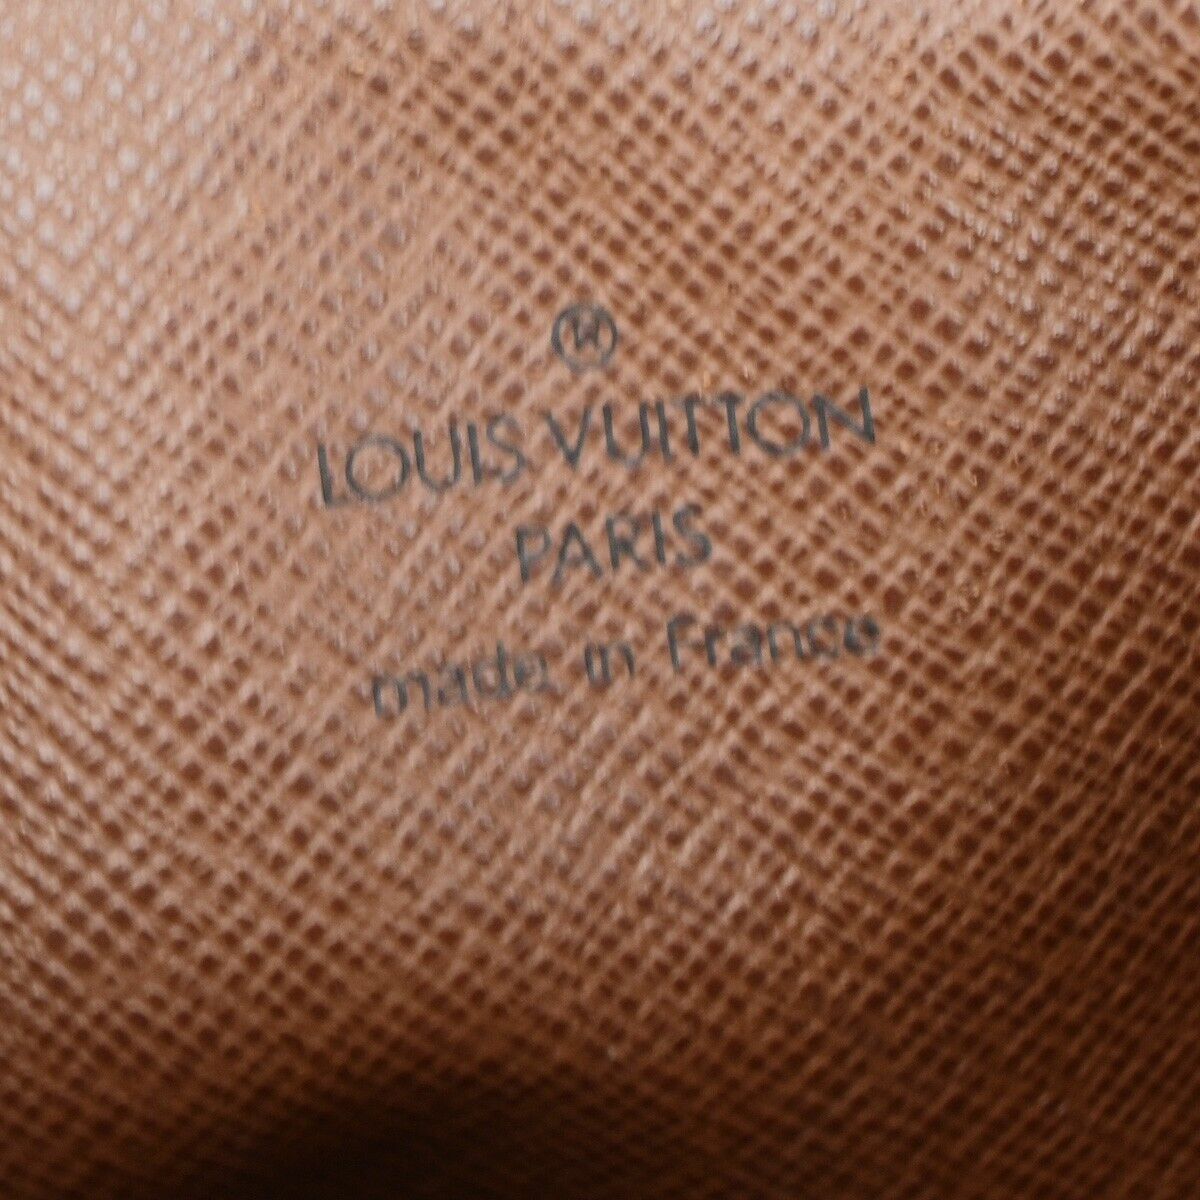 Original/Auth Louis Vuitton - Donau Umhängetasche - Klassisch - Monogramm